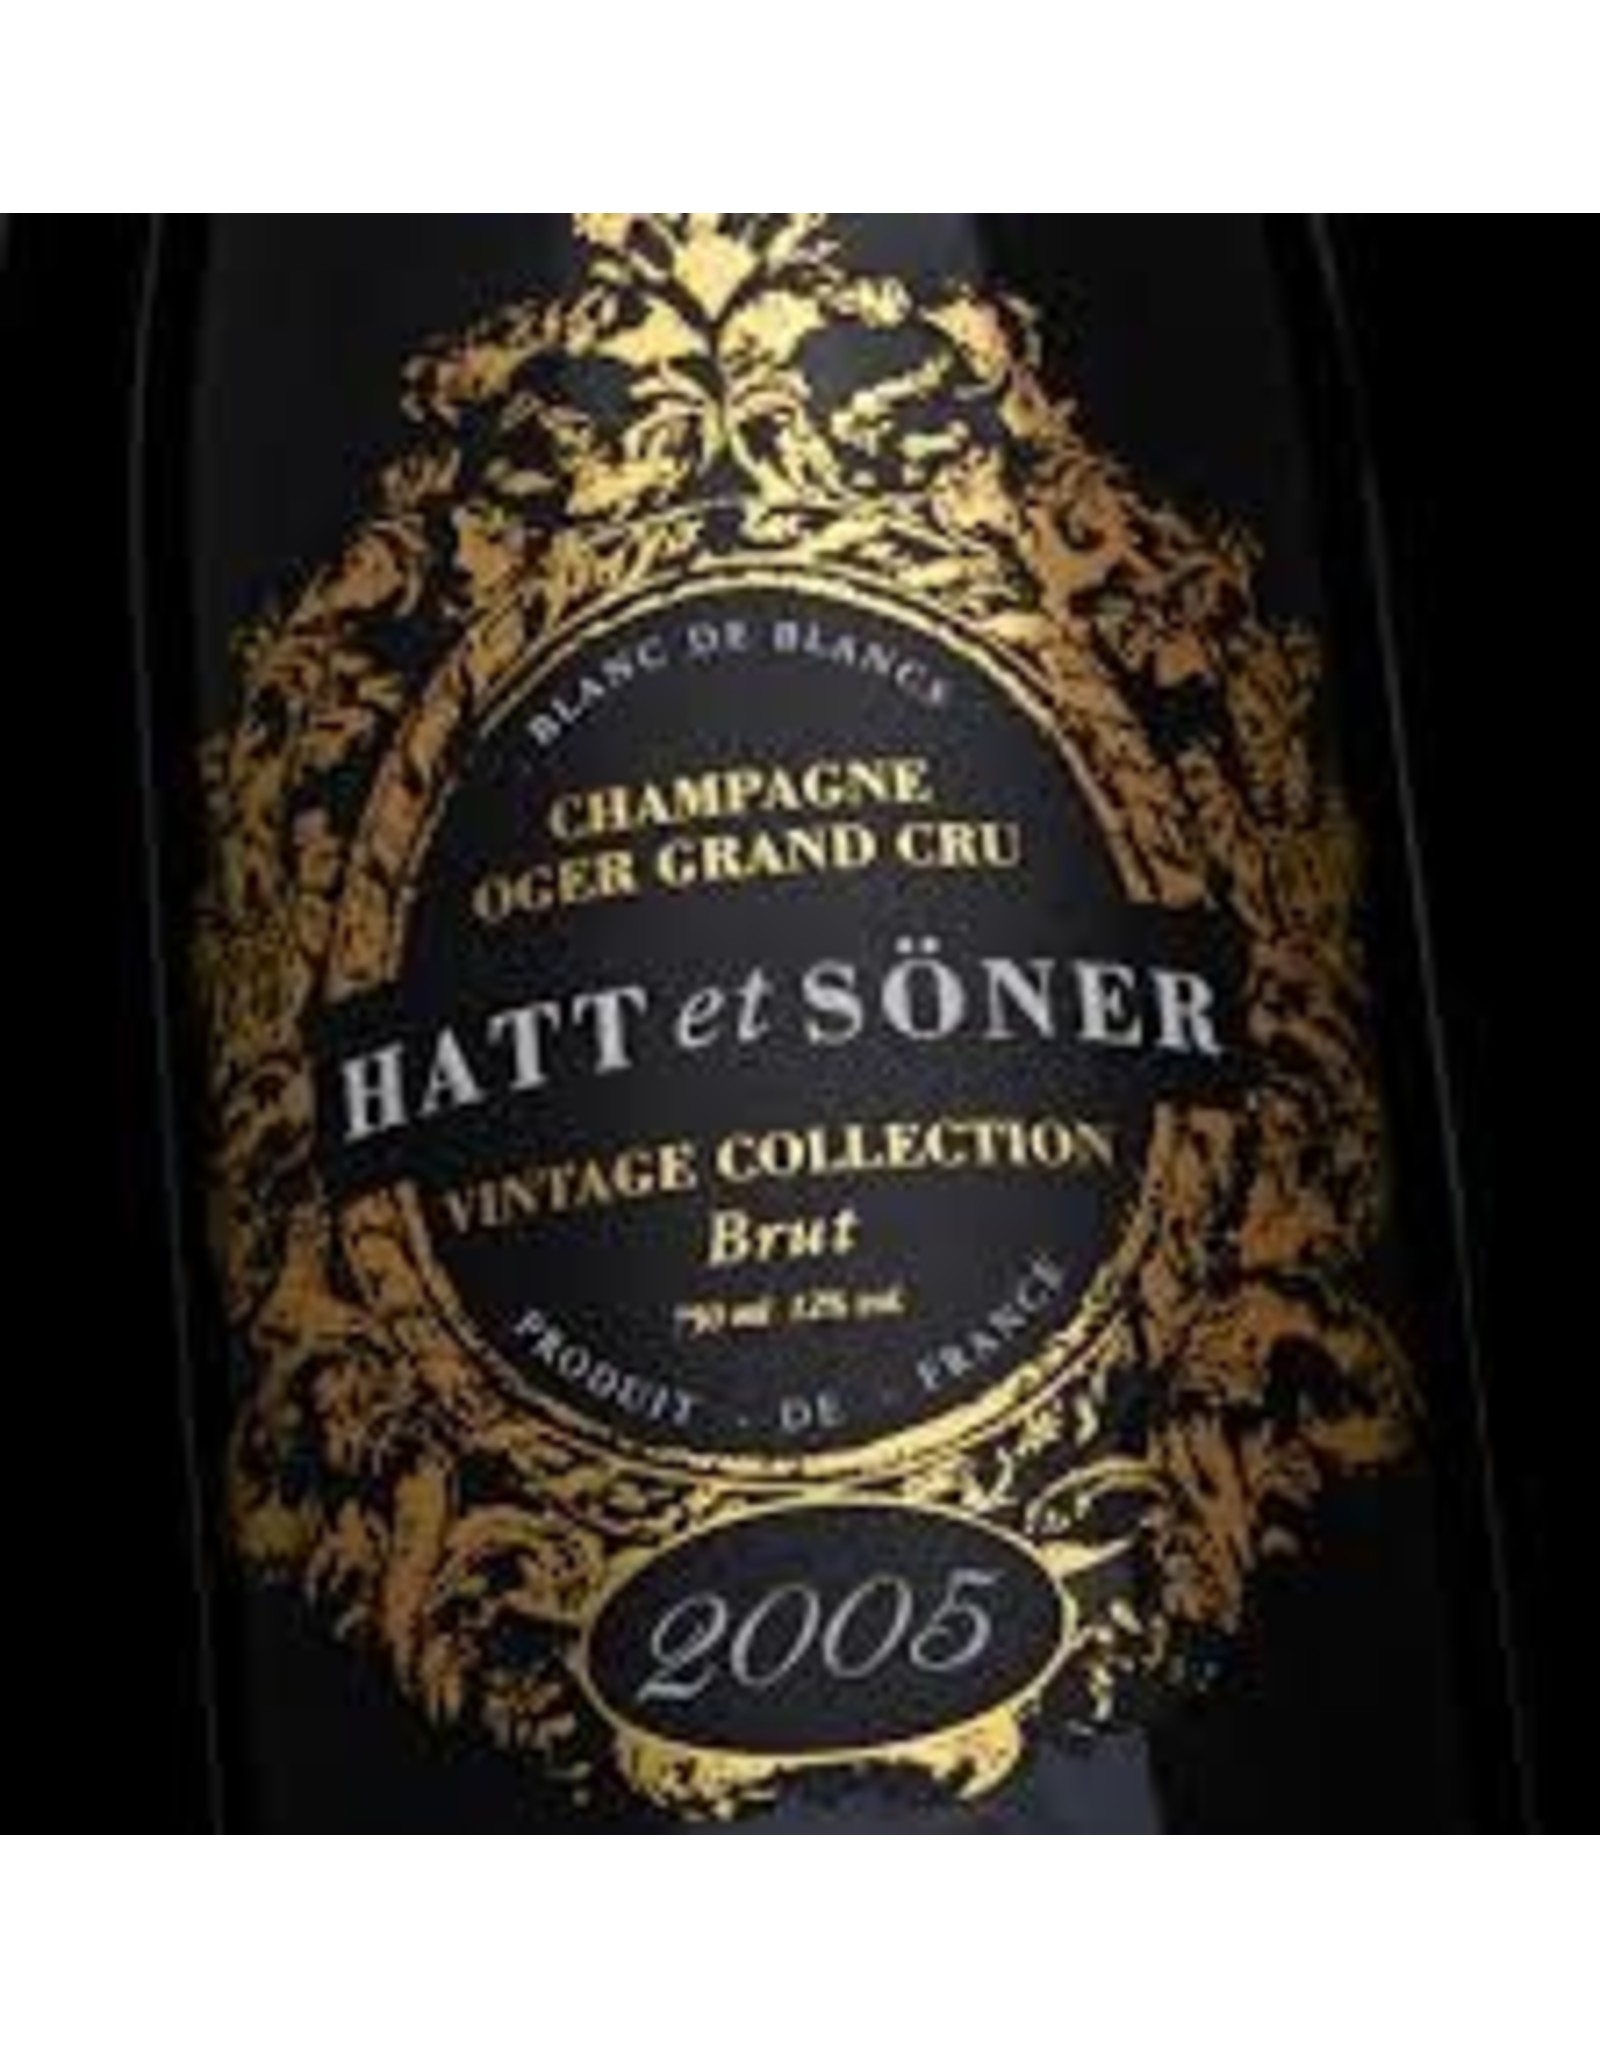 Hatt et Soner Vintage Brut Champagne 2005